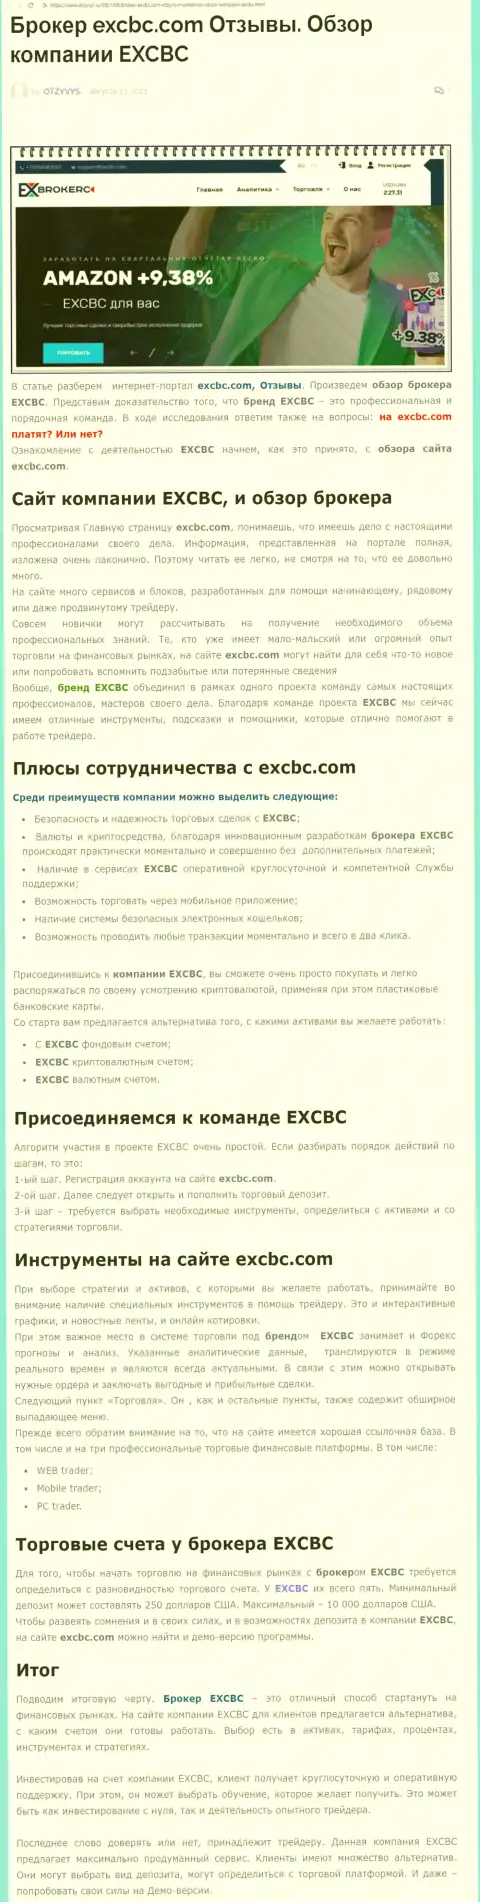 Информация о Форекс дилинговой организации EXCBC на web-сайте Otzyvys Ru